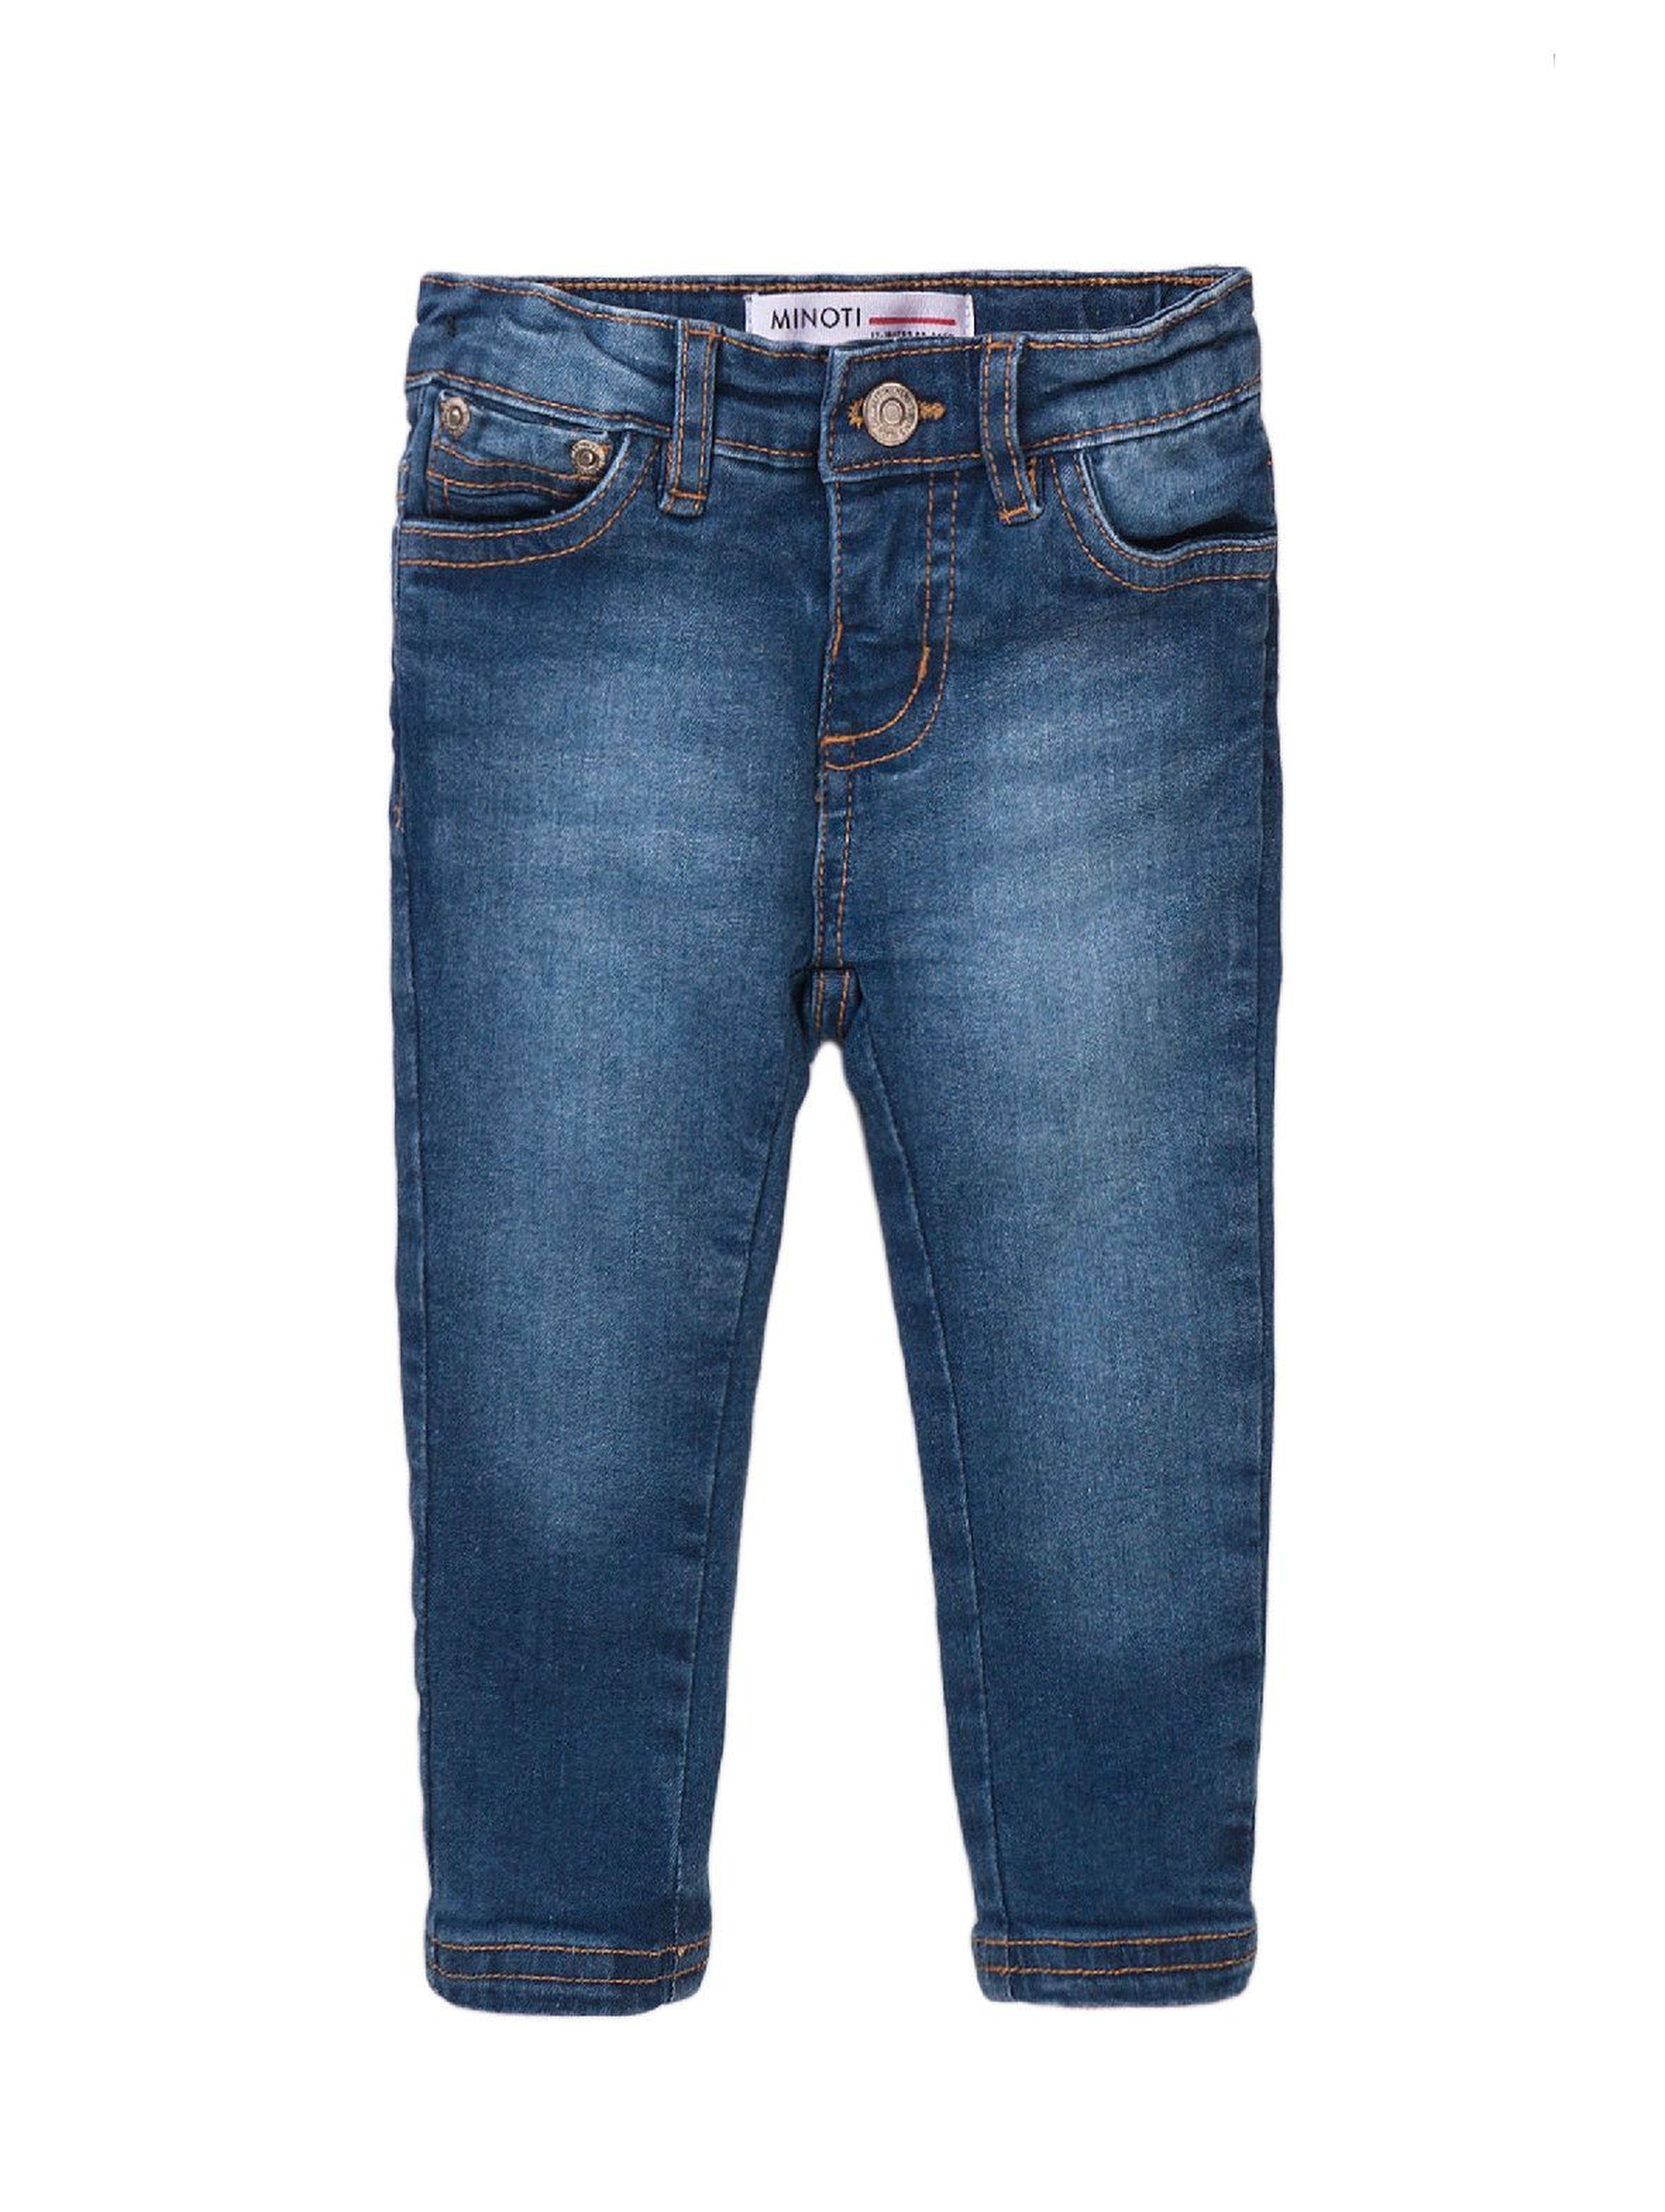 Spodnie dziewczęce jeansowe- granatowe